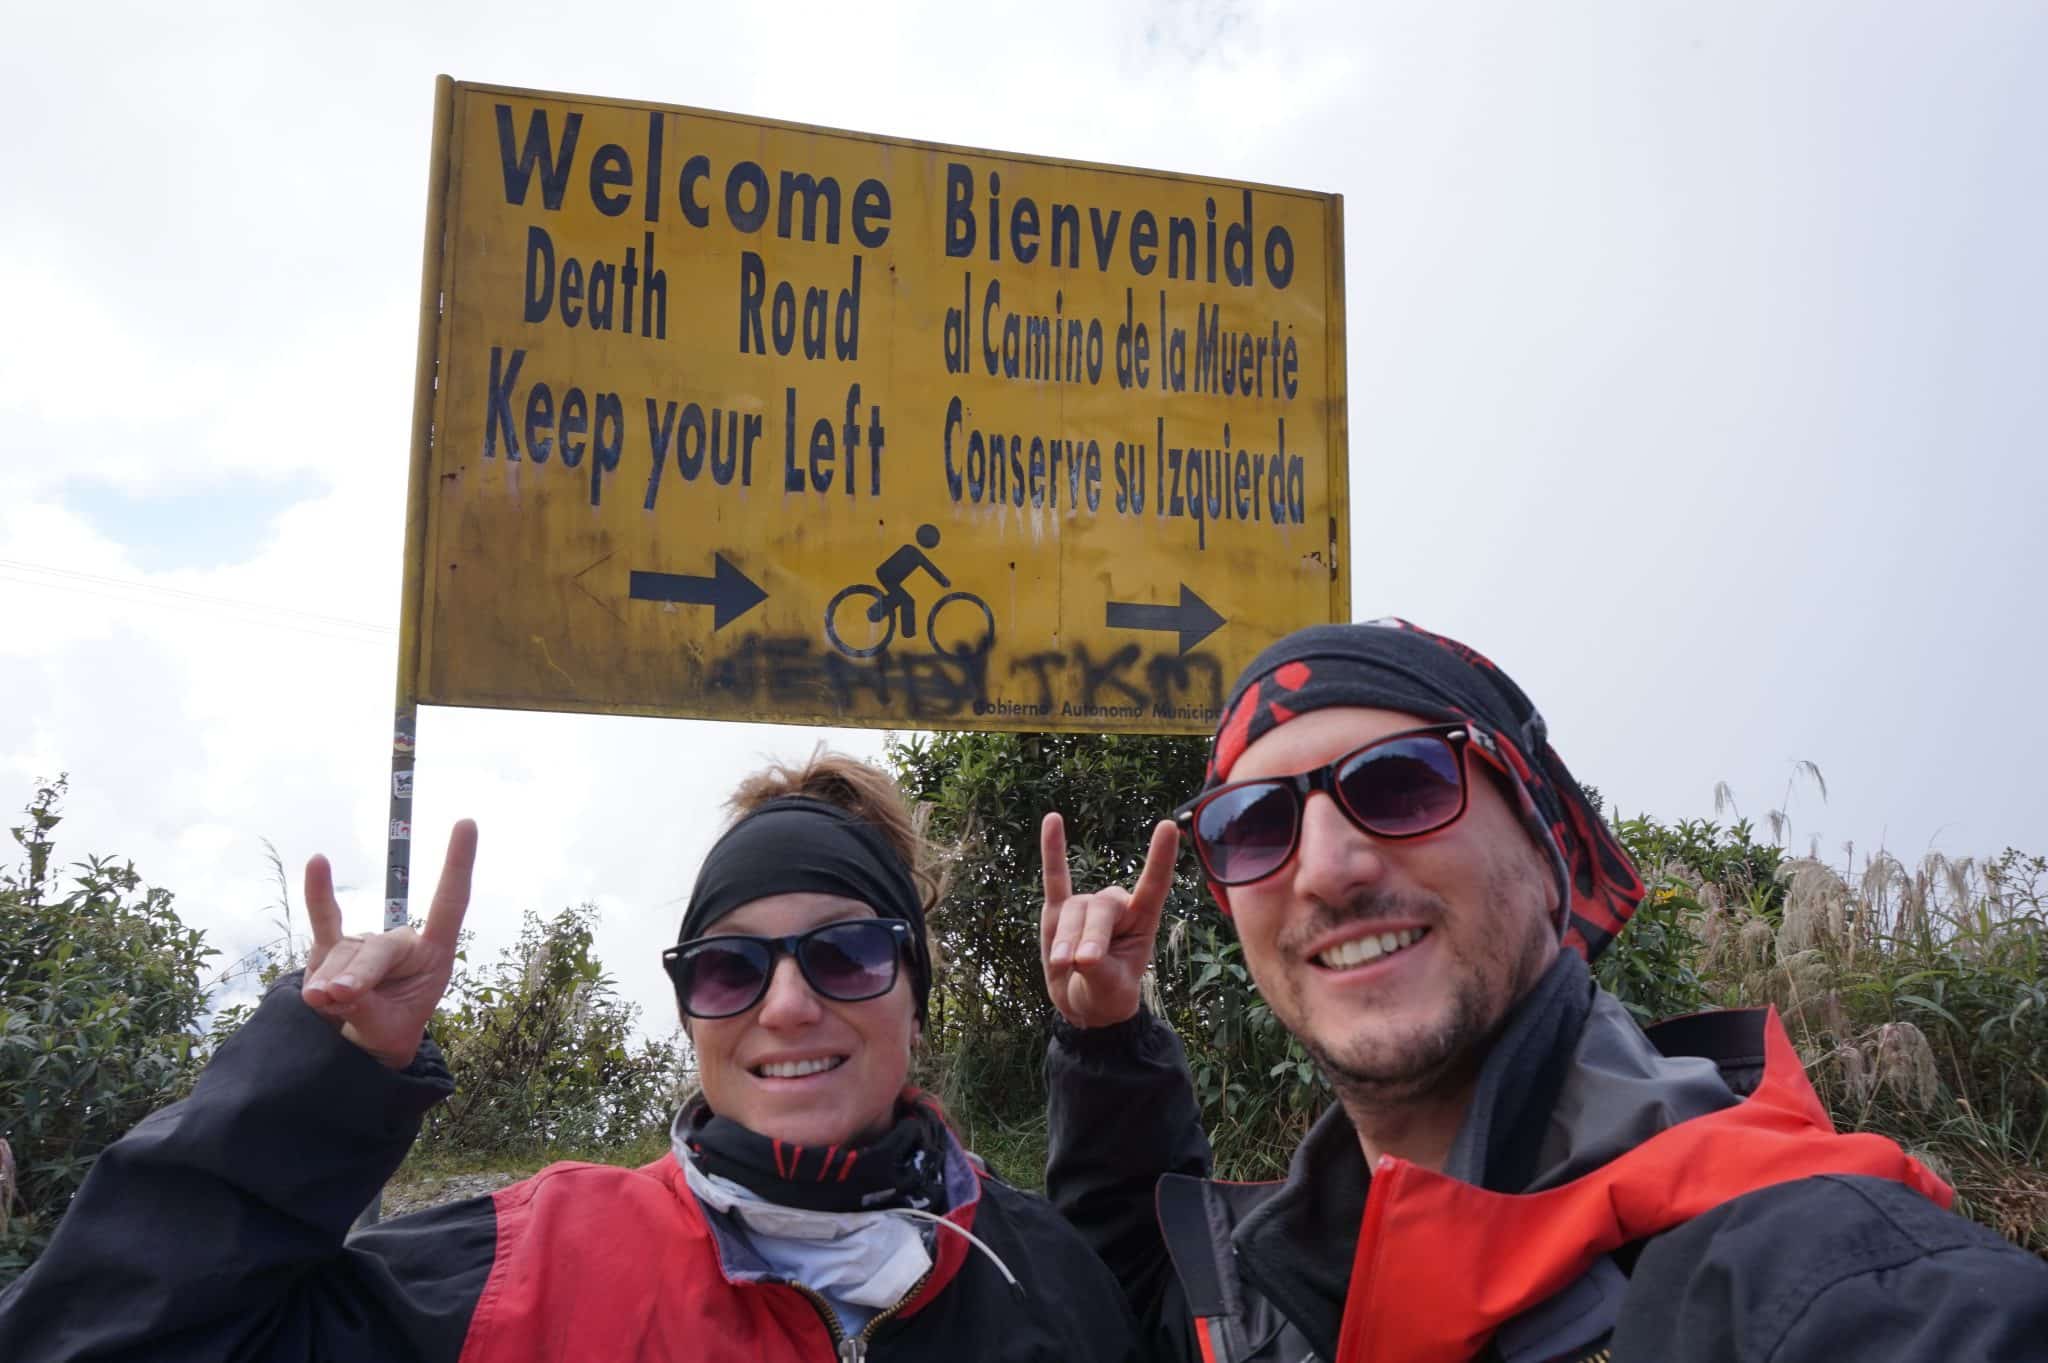 Route de la mort à vélo dans notre article Voyage en Bolivie : que voir et que faire en Bolivie en 5 expériences incroyables #Bolivie #Voyage #AmériqueduSud #IncontournablesBolivie #QueVoirBolivie